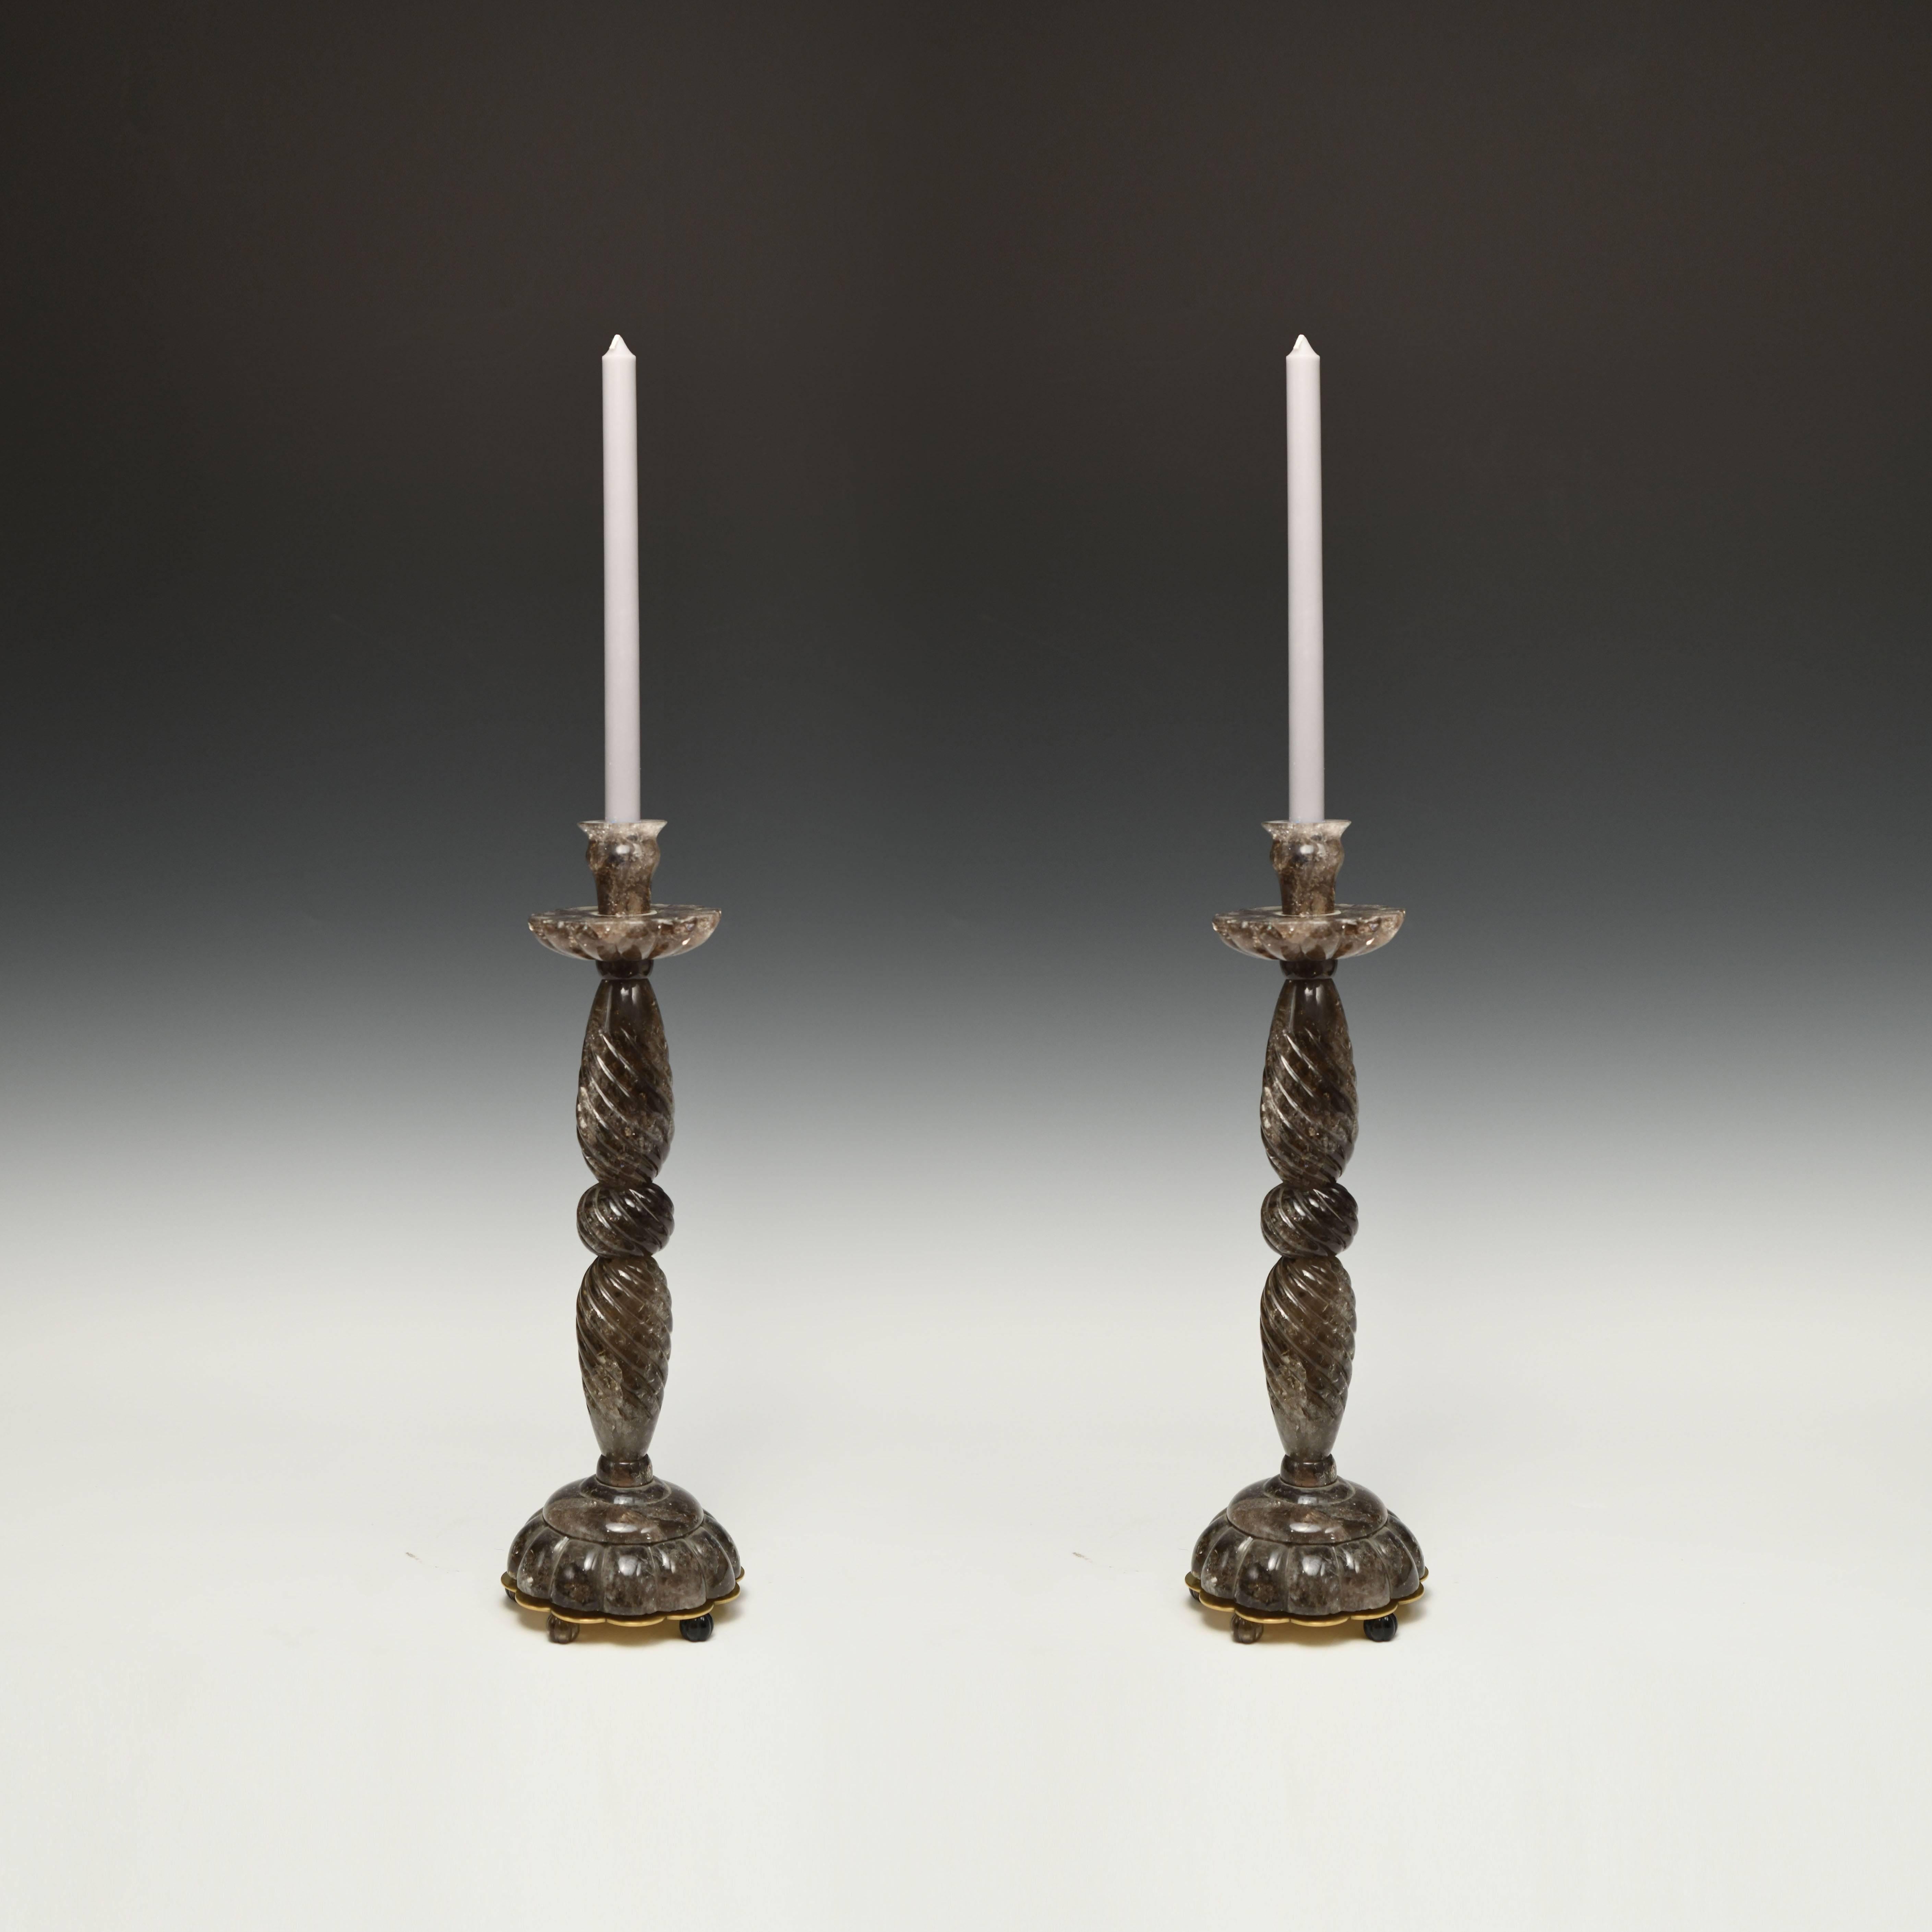 Ein Paar zeitgenössische Kerzenhalter in rauchigem Bergkristall.

  